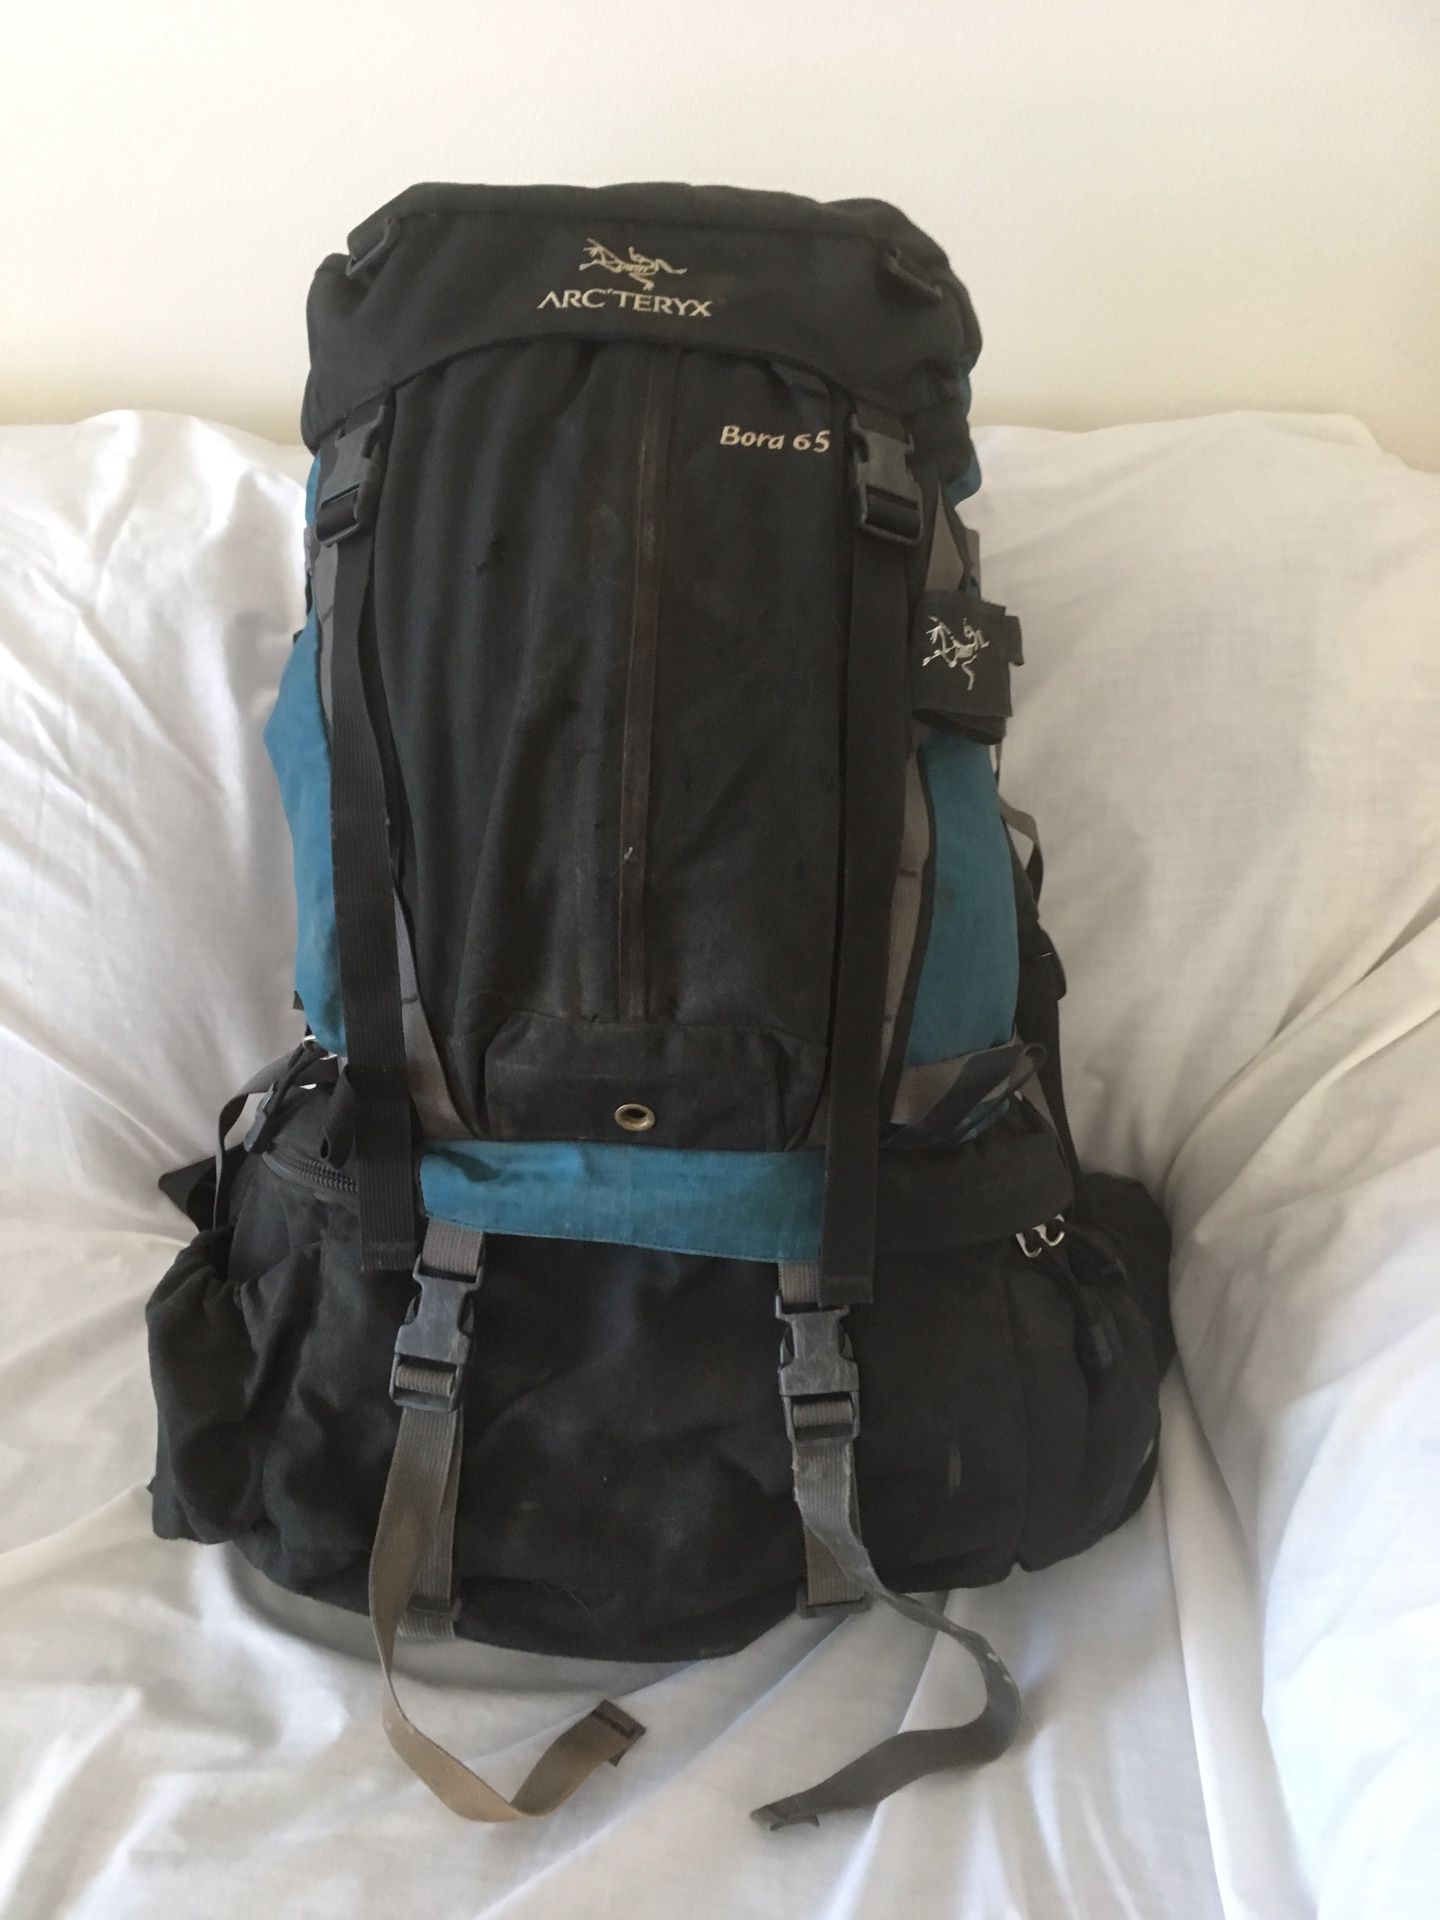 Arcteryx backpack